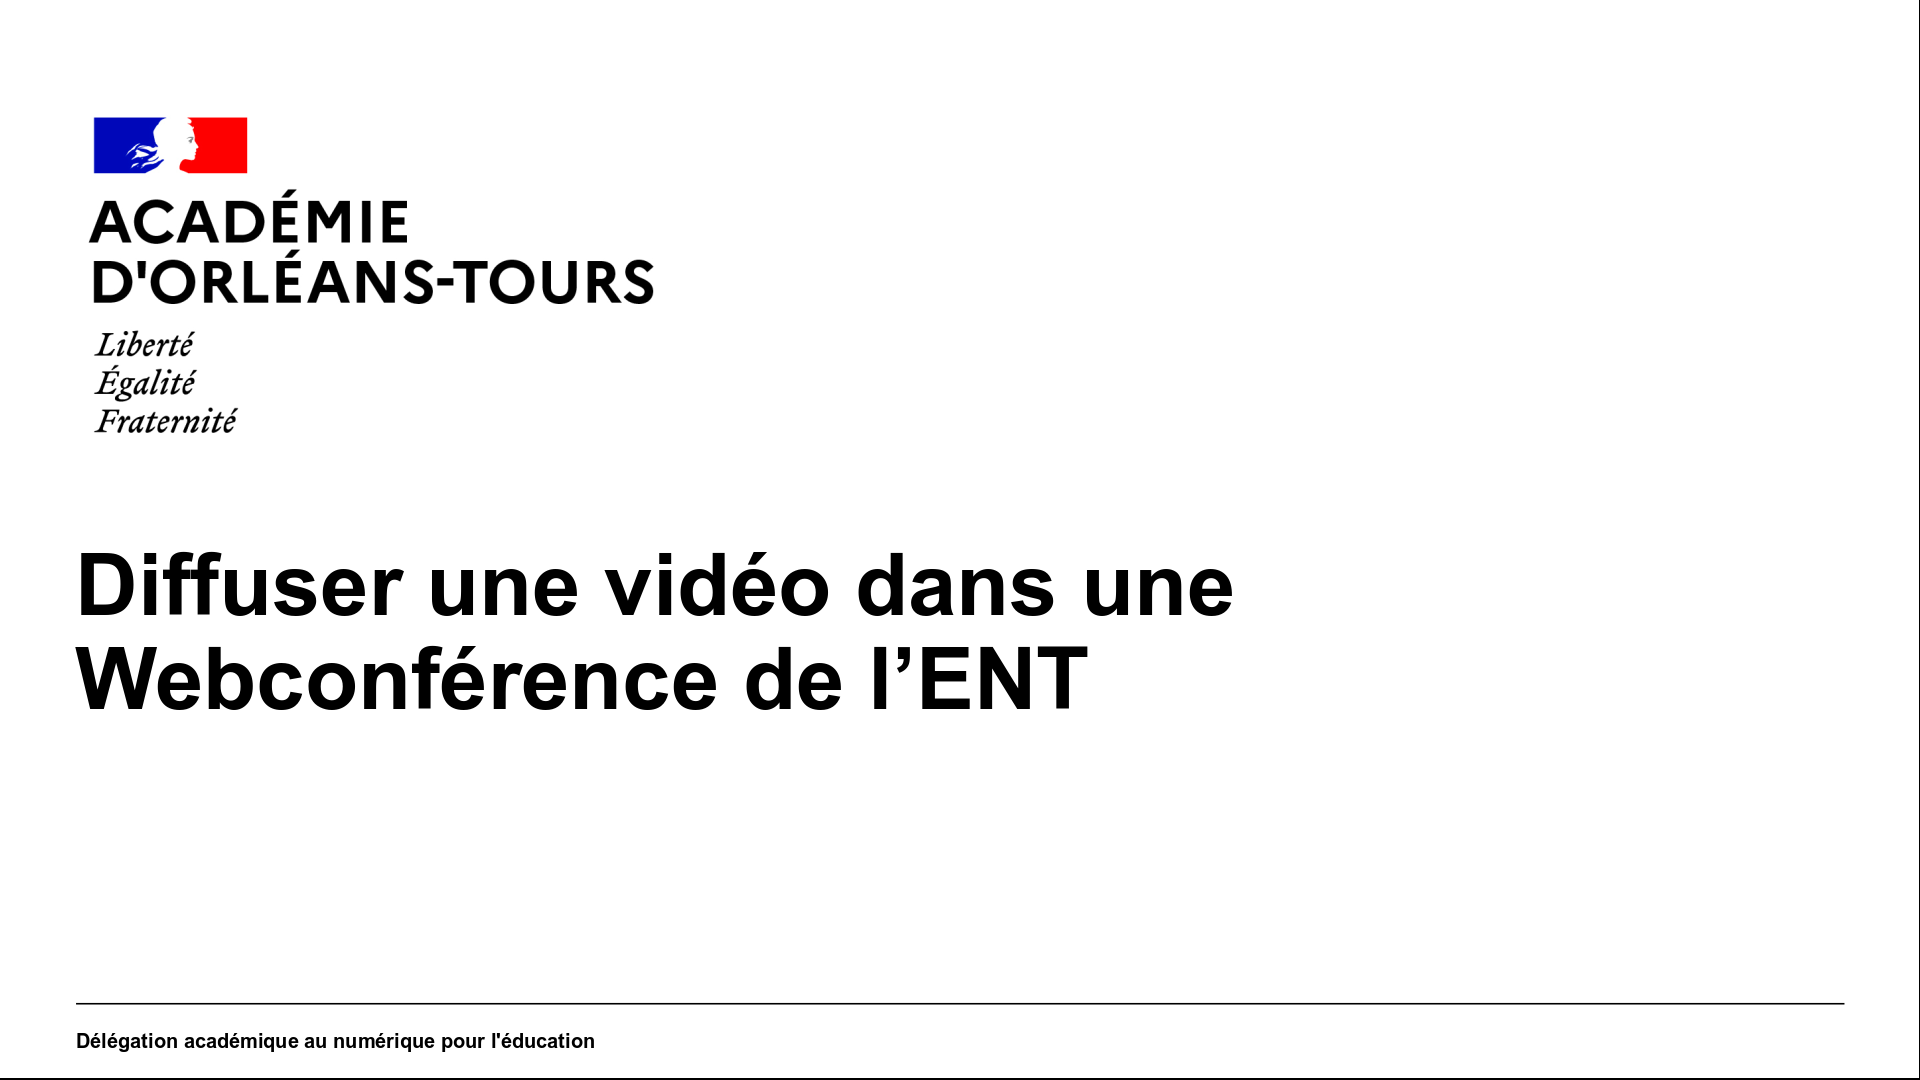 Diffuser une vidéo de la plateforme vidéo aux élèves dans une Webconférence